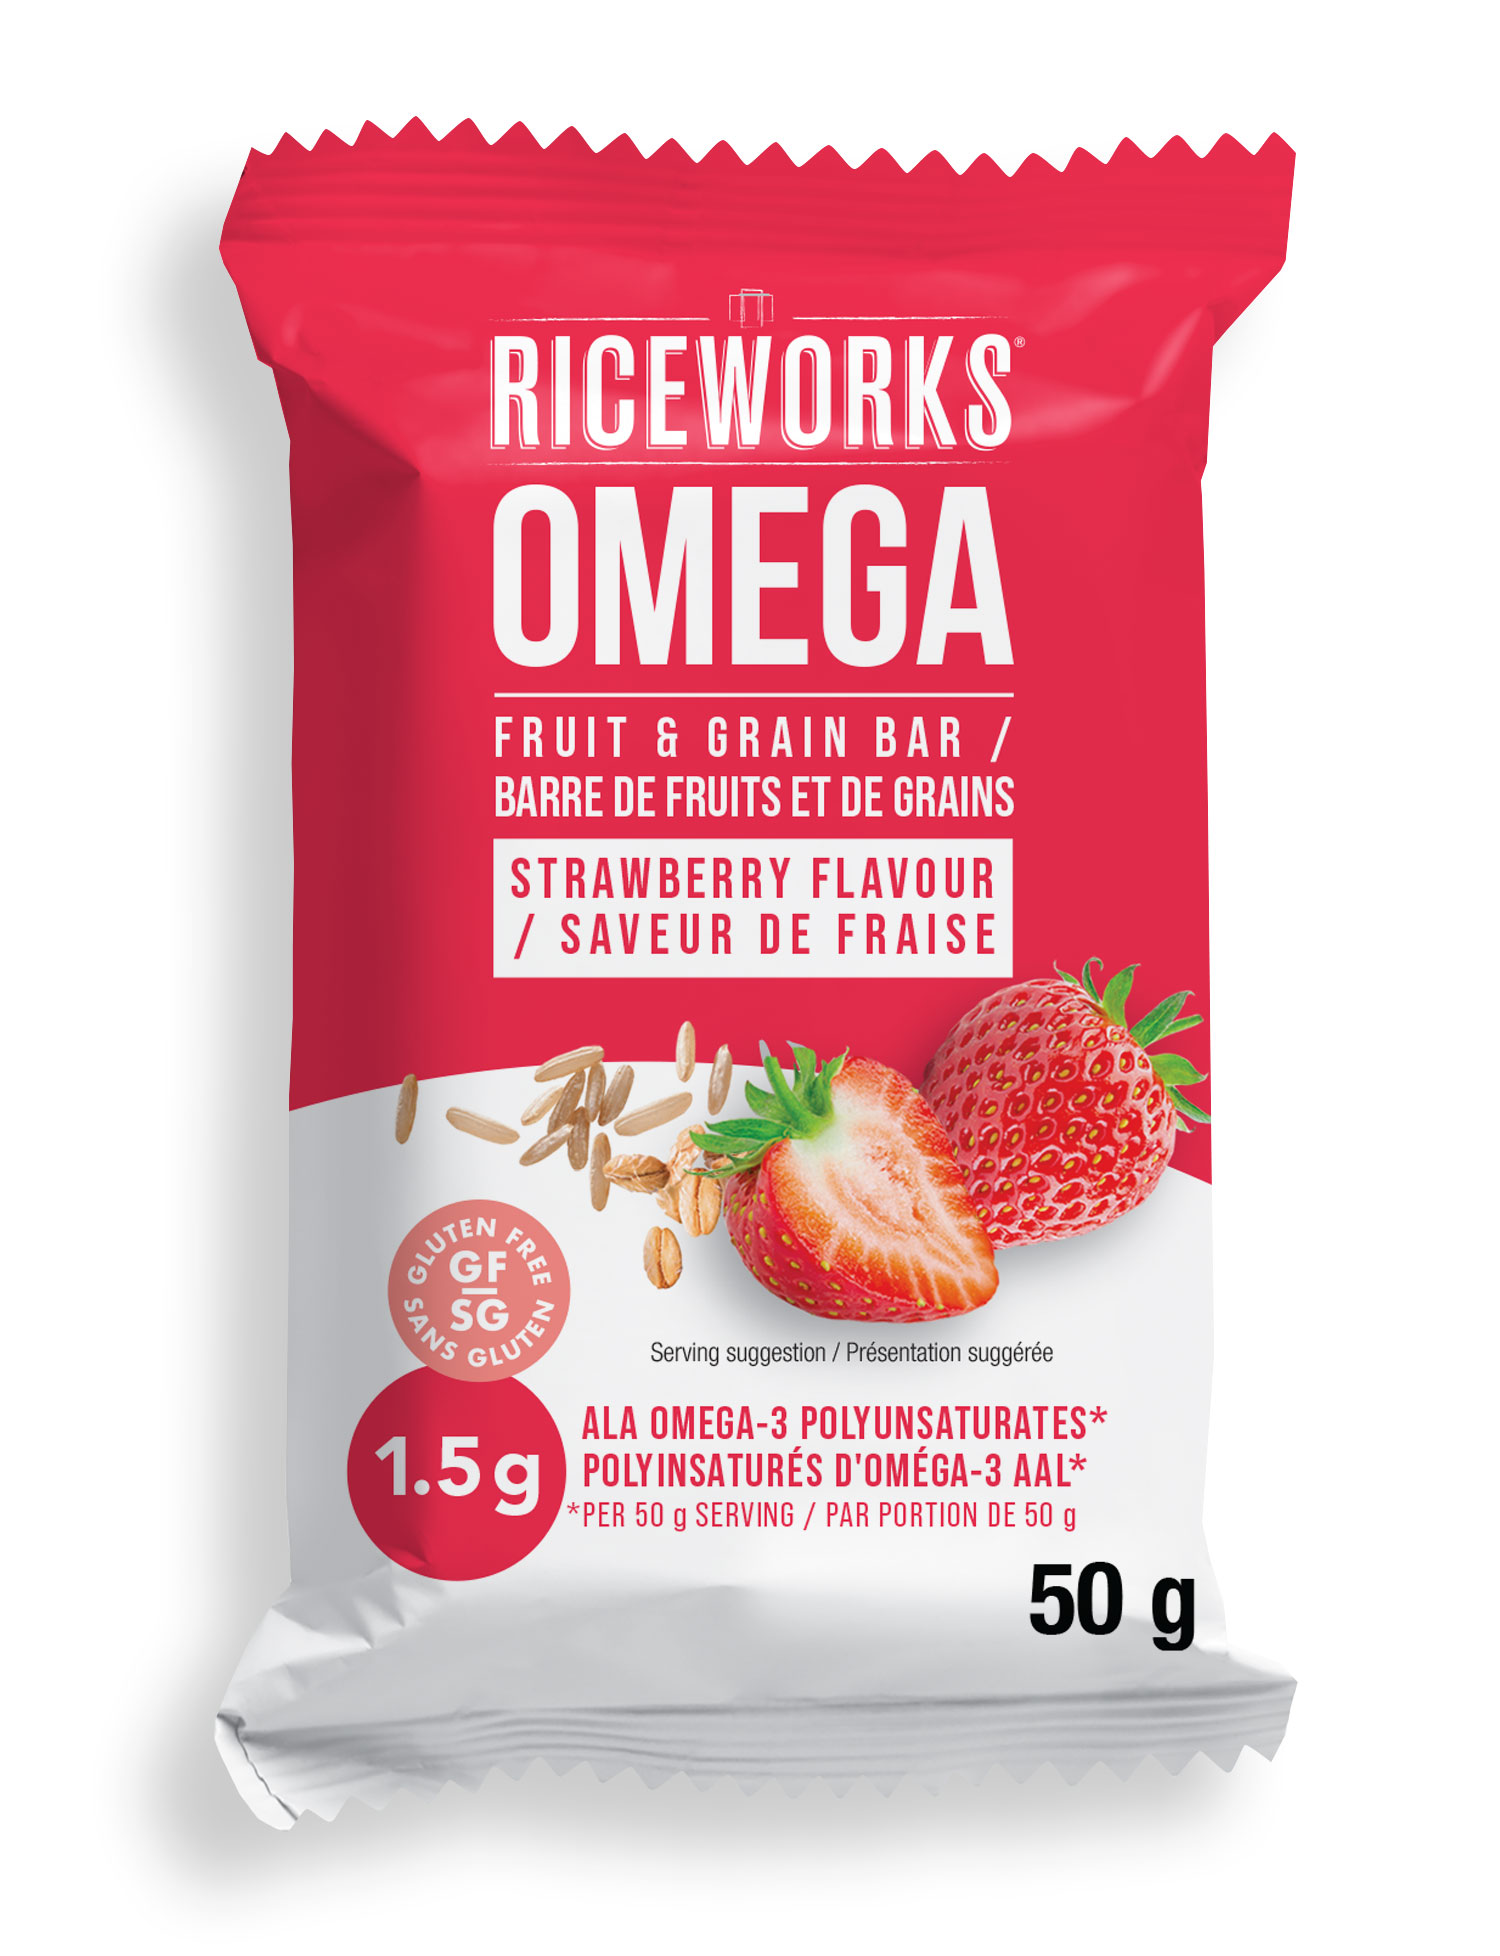 Riceworks Omega - Fruit & Grain Bar / Barre de fruits et de grains - Strawberry Flavour / Saveur de fraise